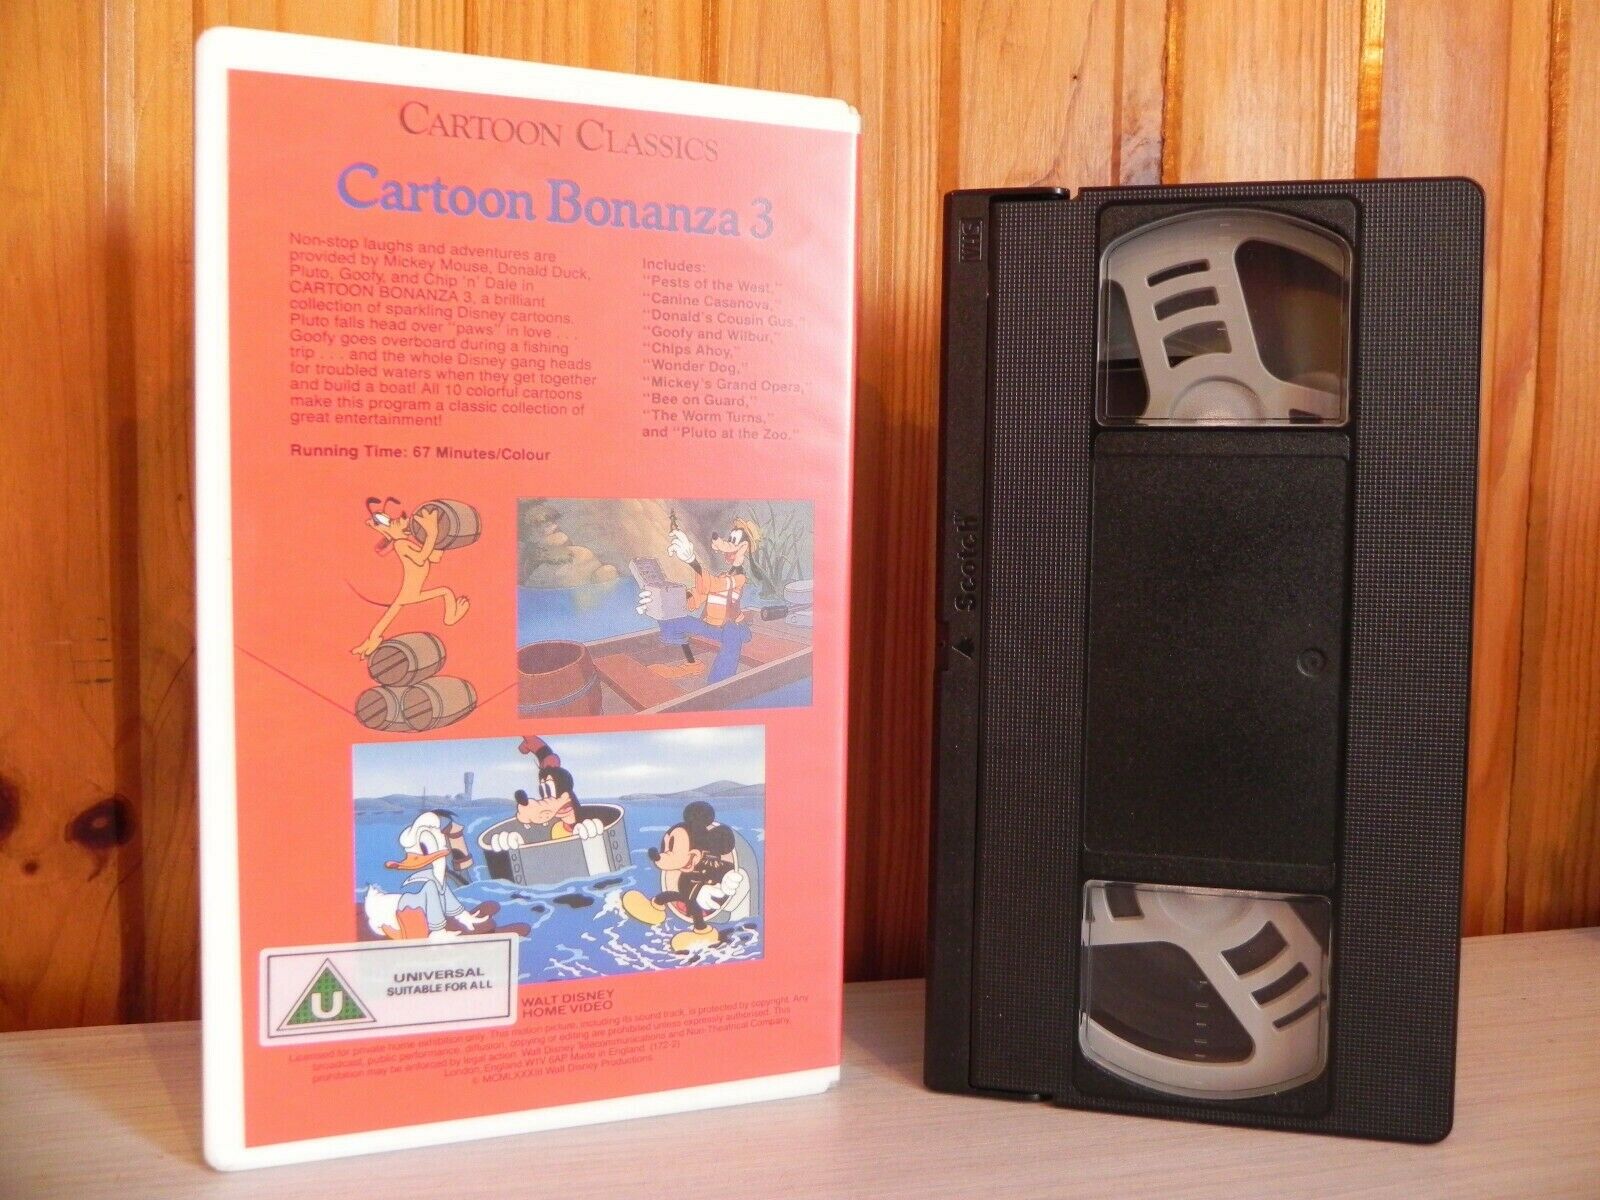 Beta Copy - Pre-Cert - Walt Disney Video - Cartoon Bonanza - Vol 3 - V.RARE VHS-